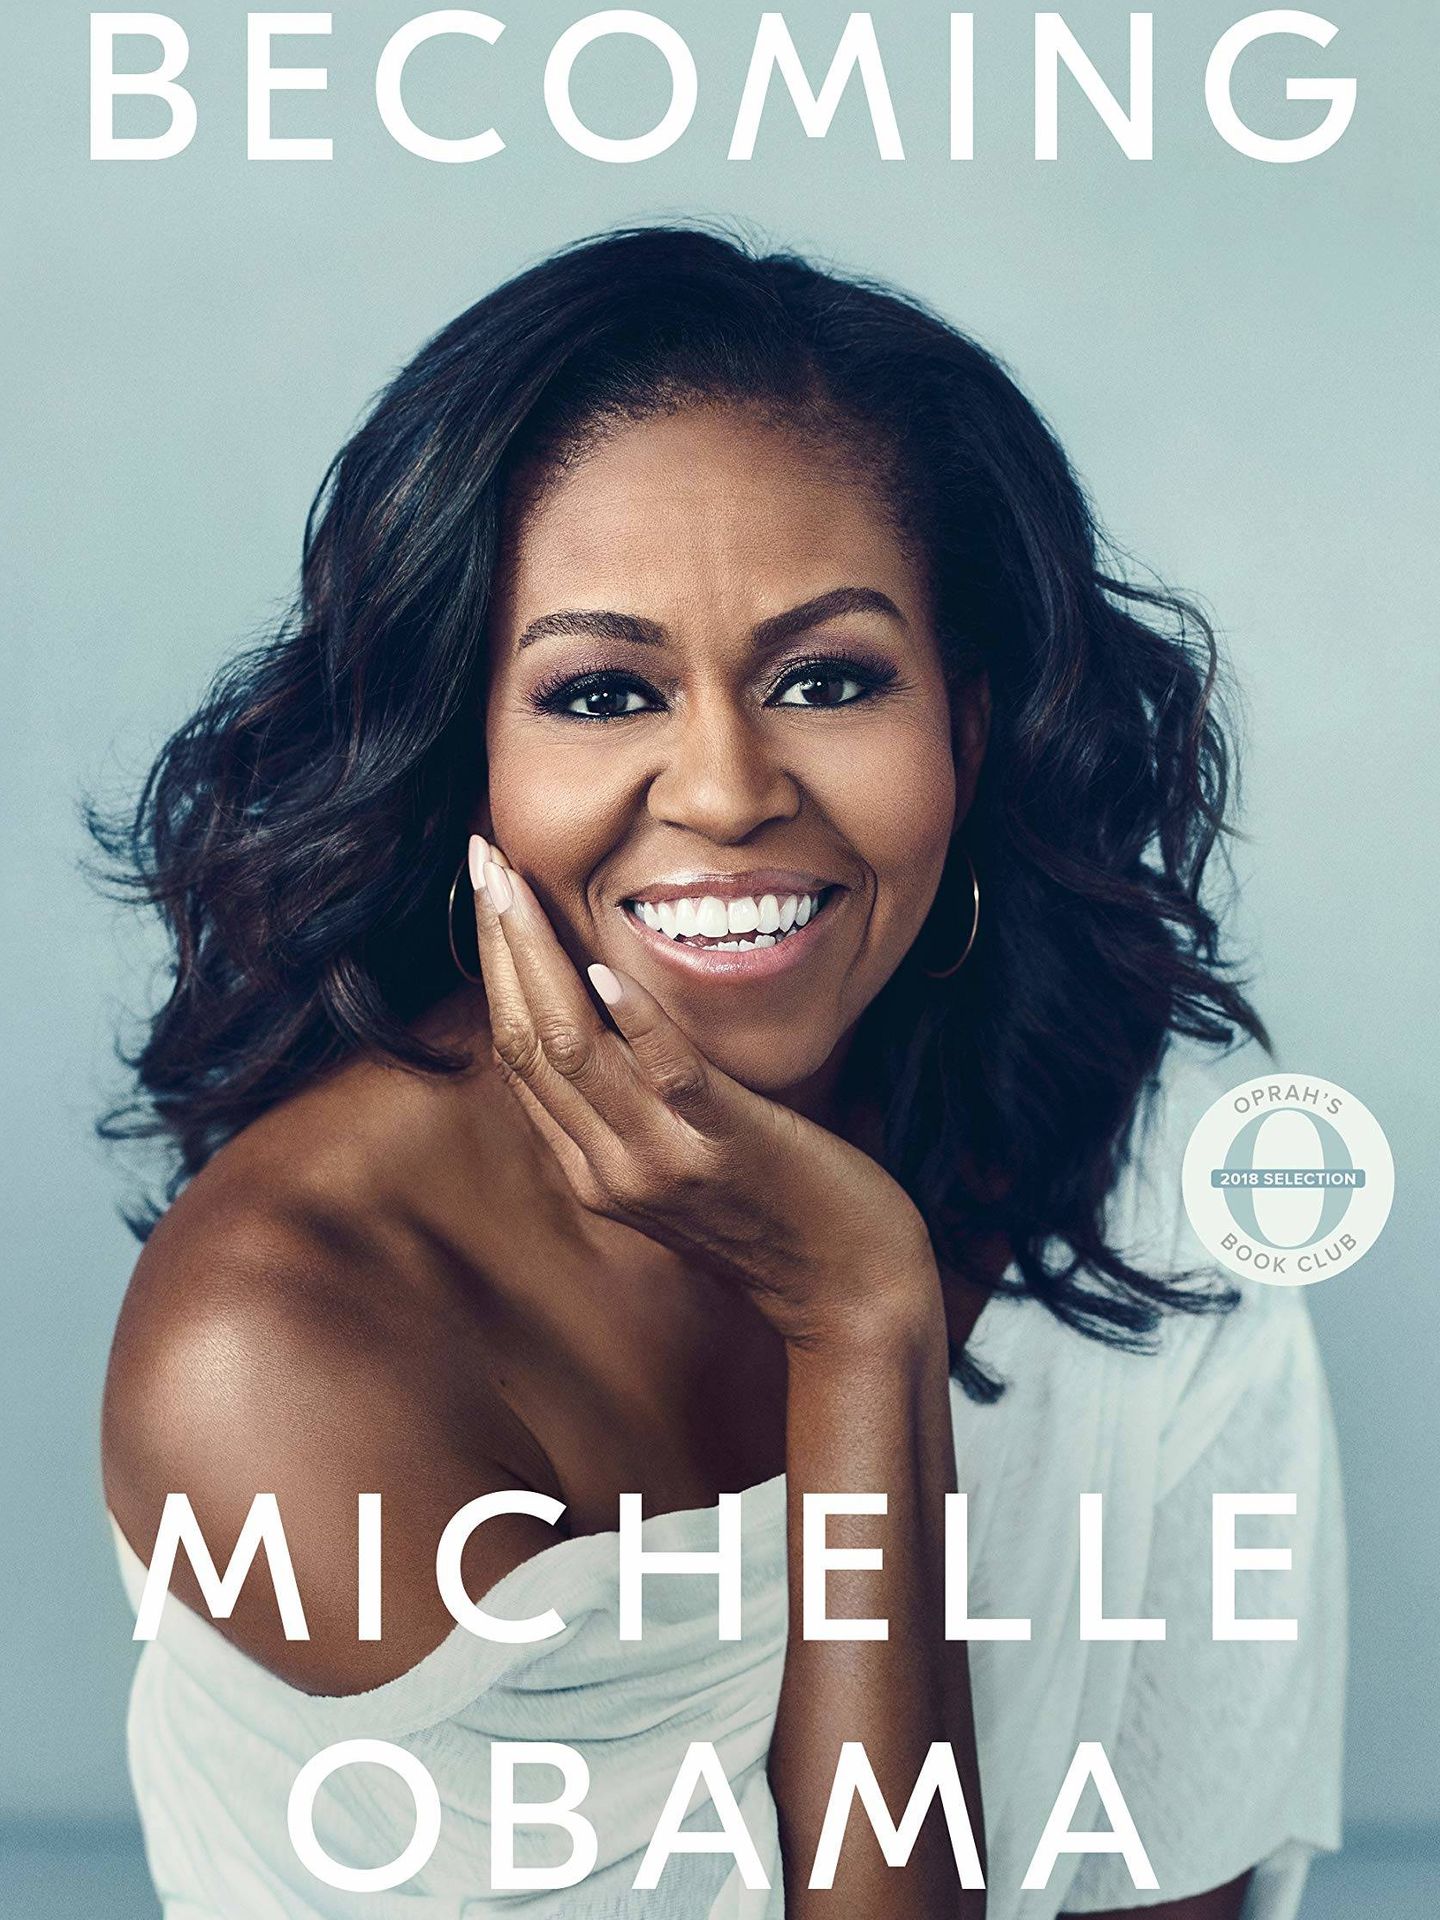 Portada del libro 'Becoming Michelle Obama'. (Amazon)